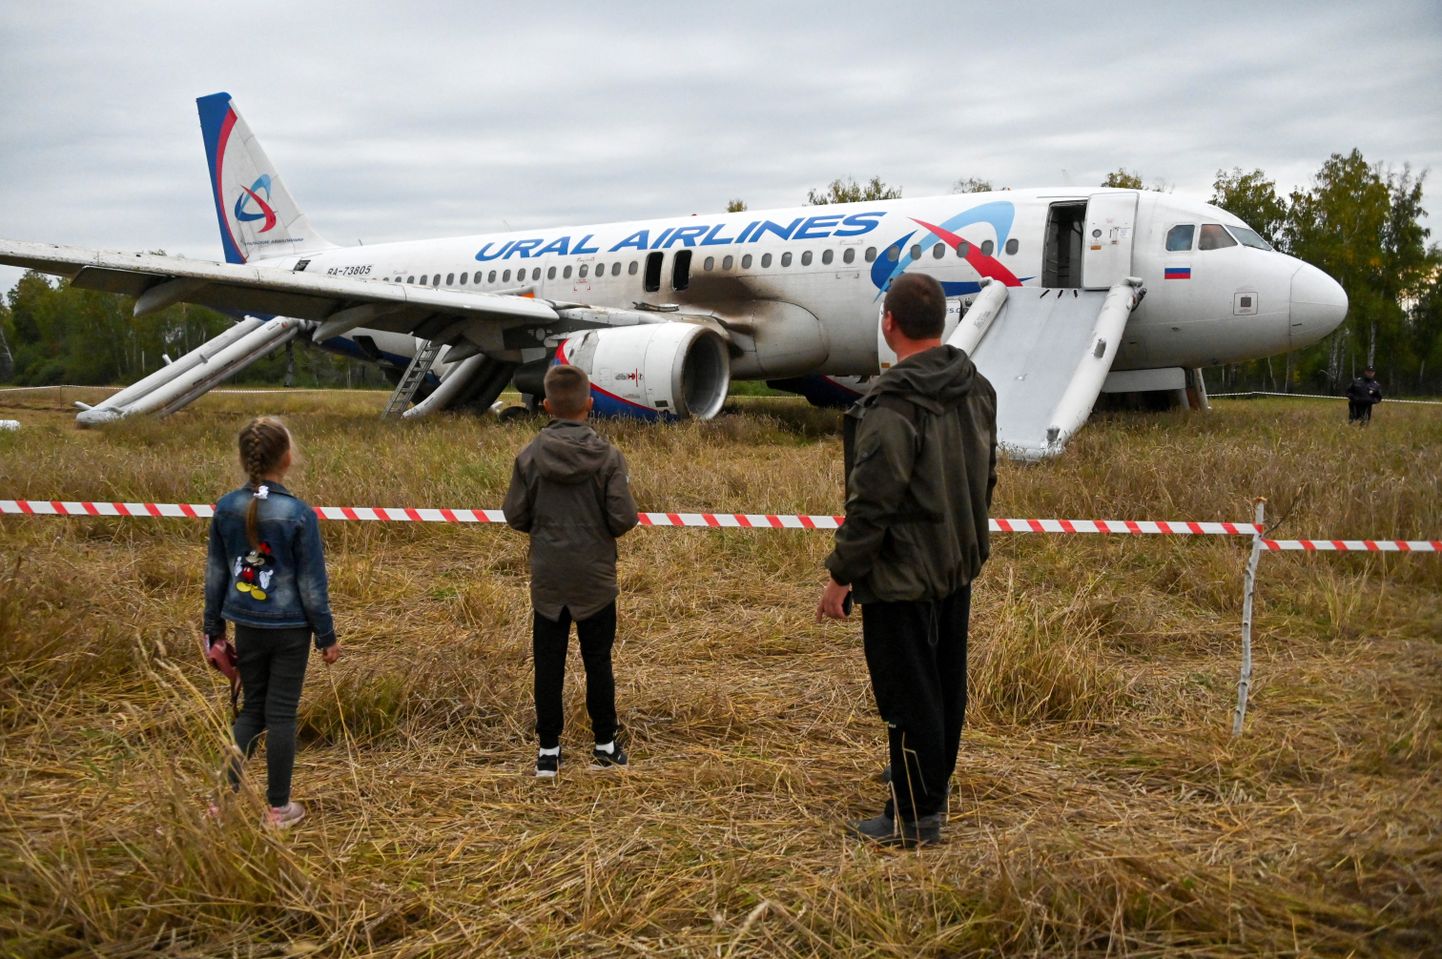 Ural Airlinesi Airbus A320, mis oli sunnitud 12. septembril tehnilise rikke tõttu maanduma Siberis Novosibirski oblasti põllul.